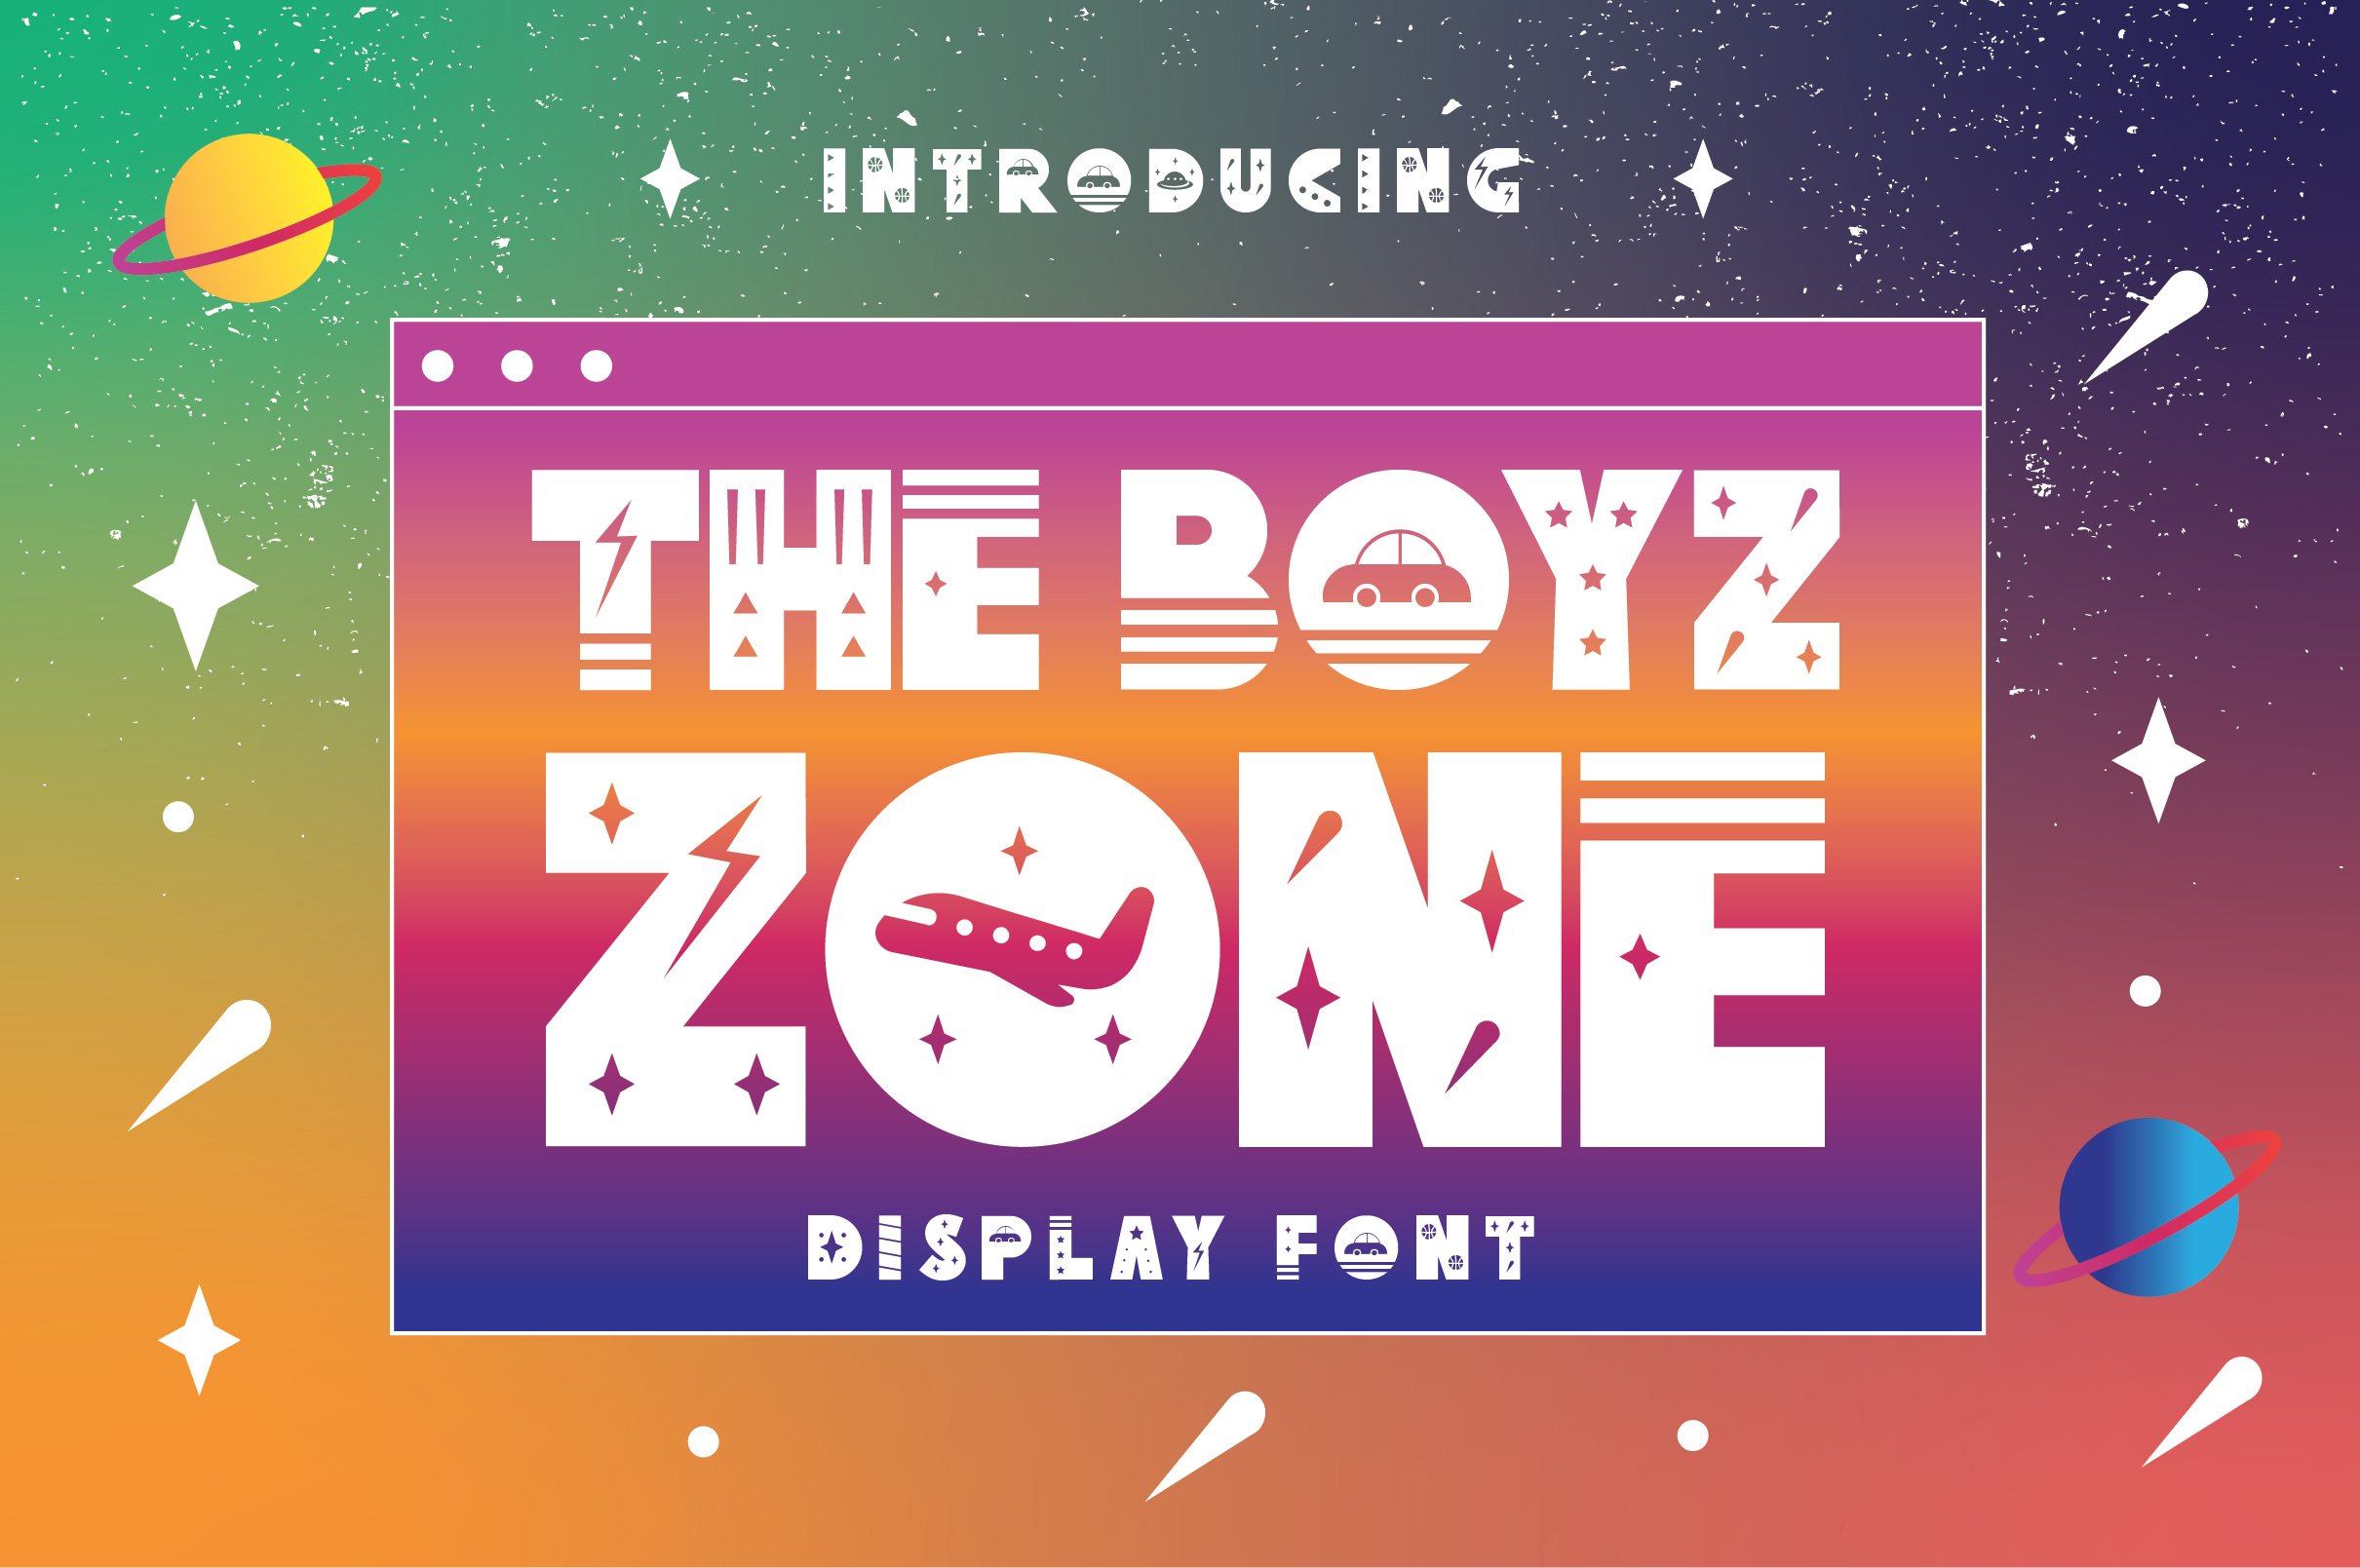 The Boyz Zone cover image.